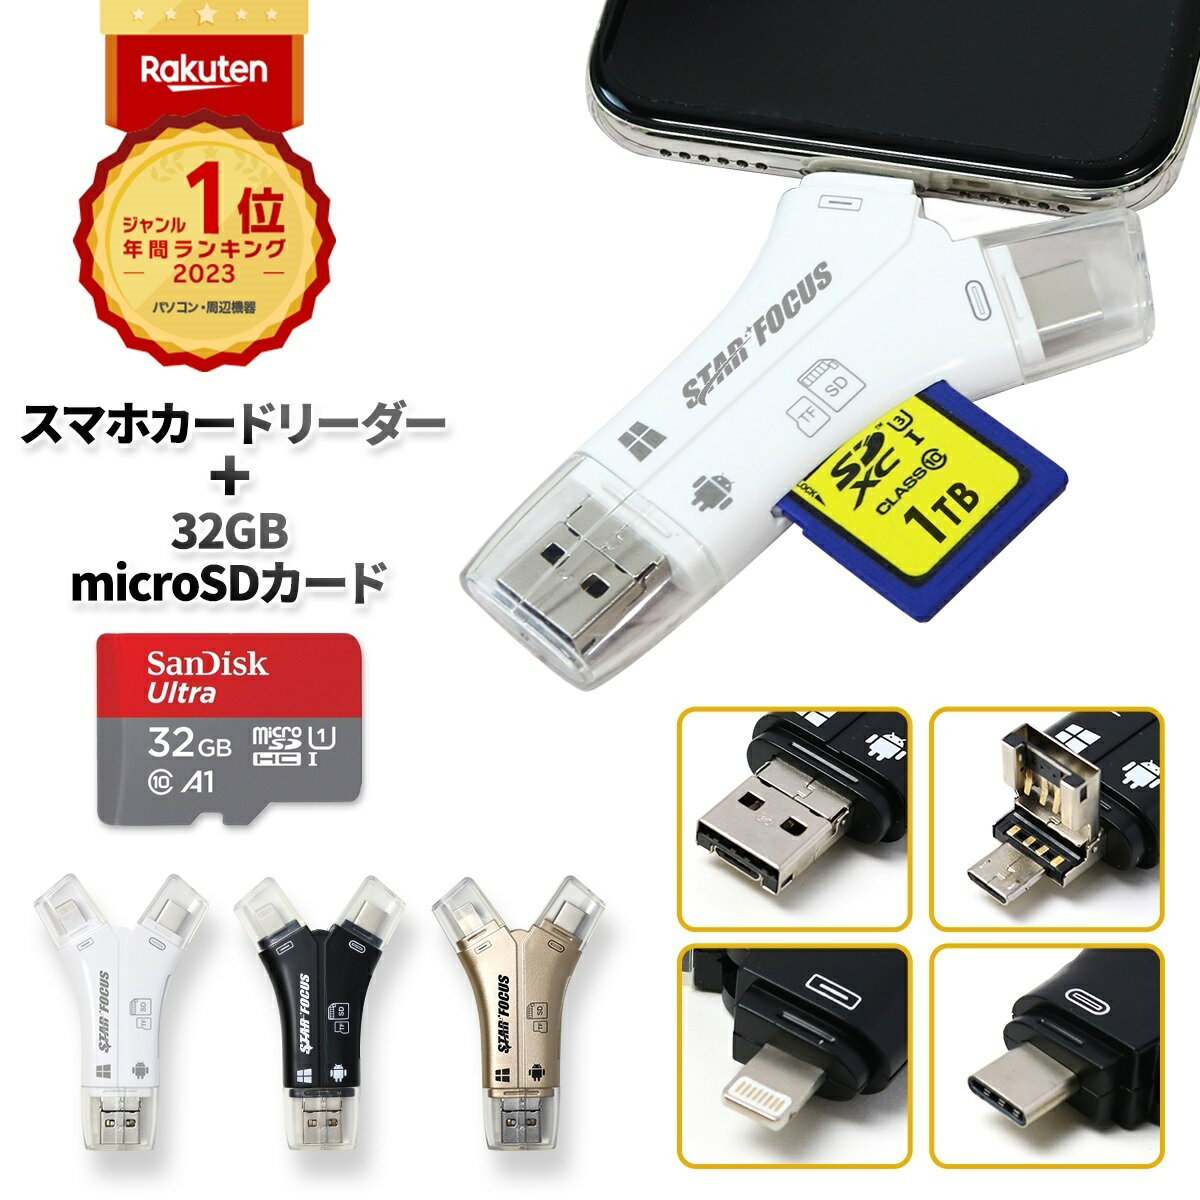 【microSDカード 32GBセット】【楽天1位 28冠】【1TB対応】6ヶ月保証 日本語取説付 SDカードリーダー iPhone バックアップ USB USBメモリ 写真 保存 マイクロSDカードリーダー microSDカードリーダー SDカードカメラリーダー スマホ